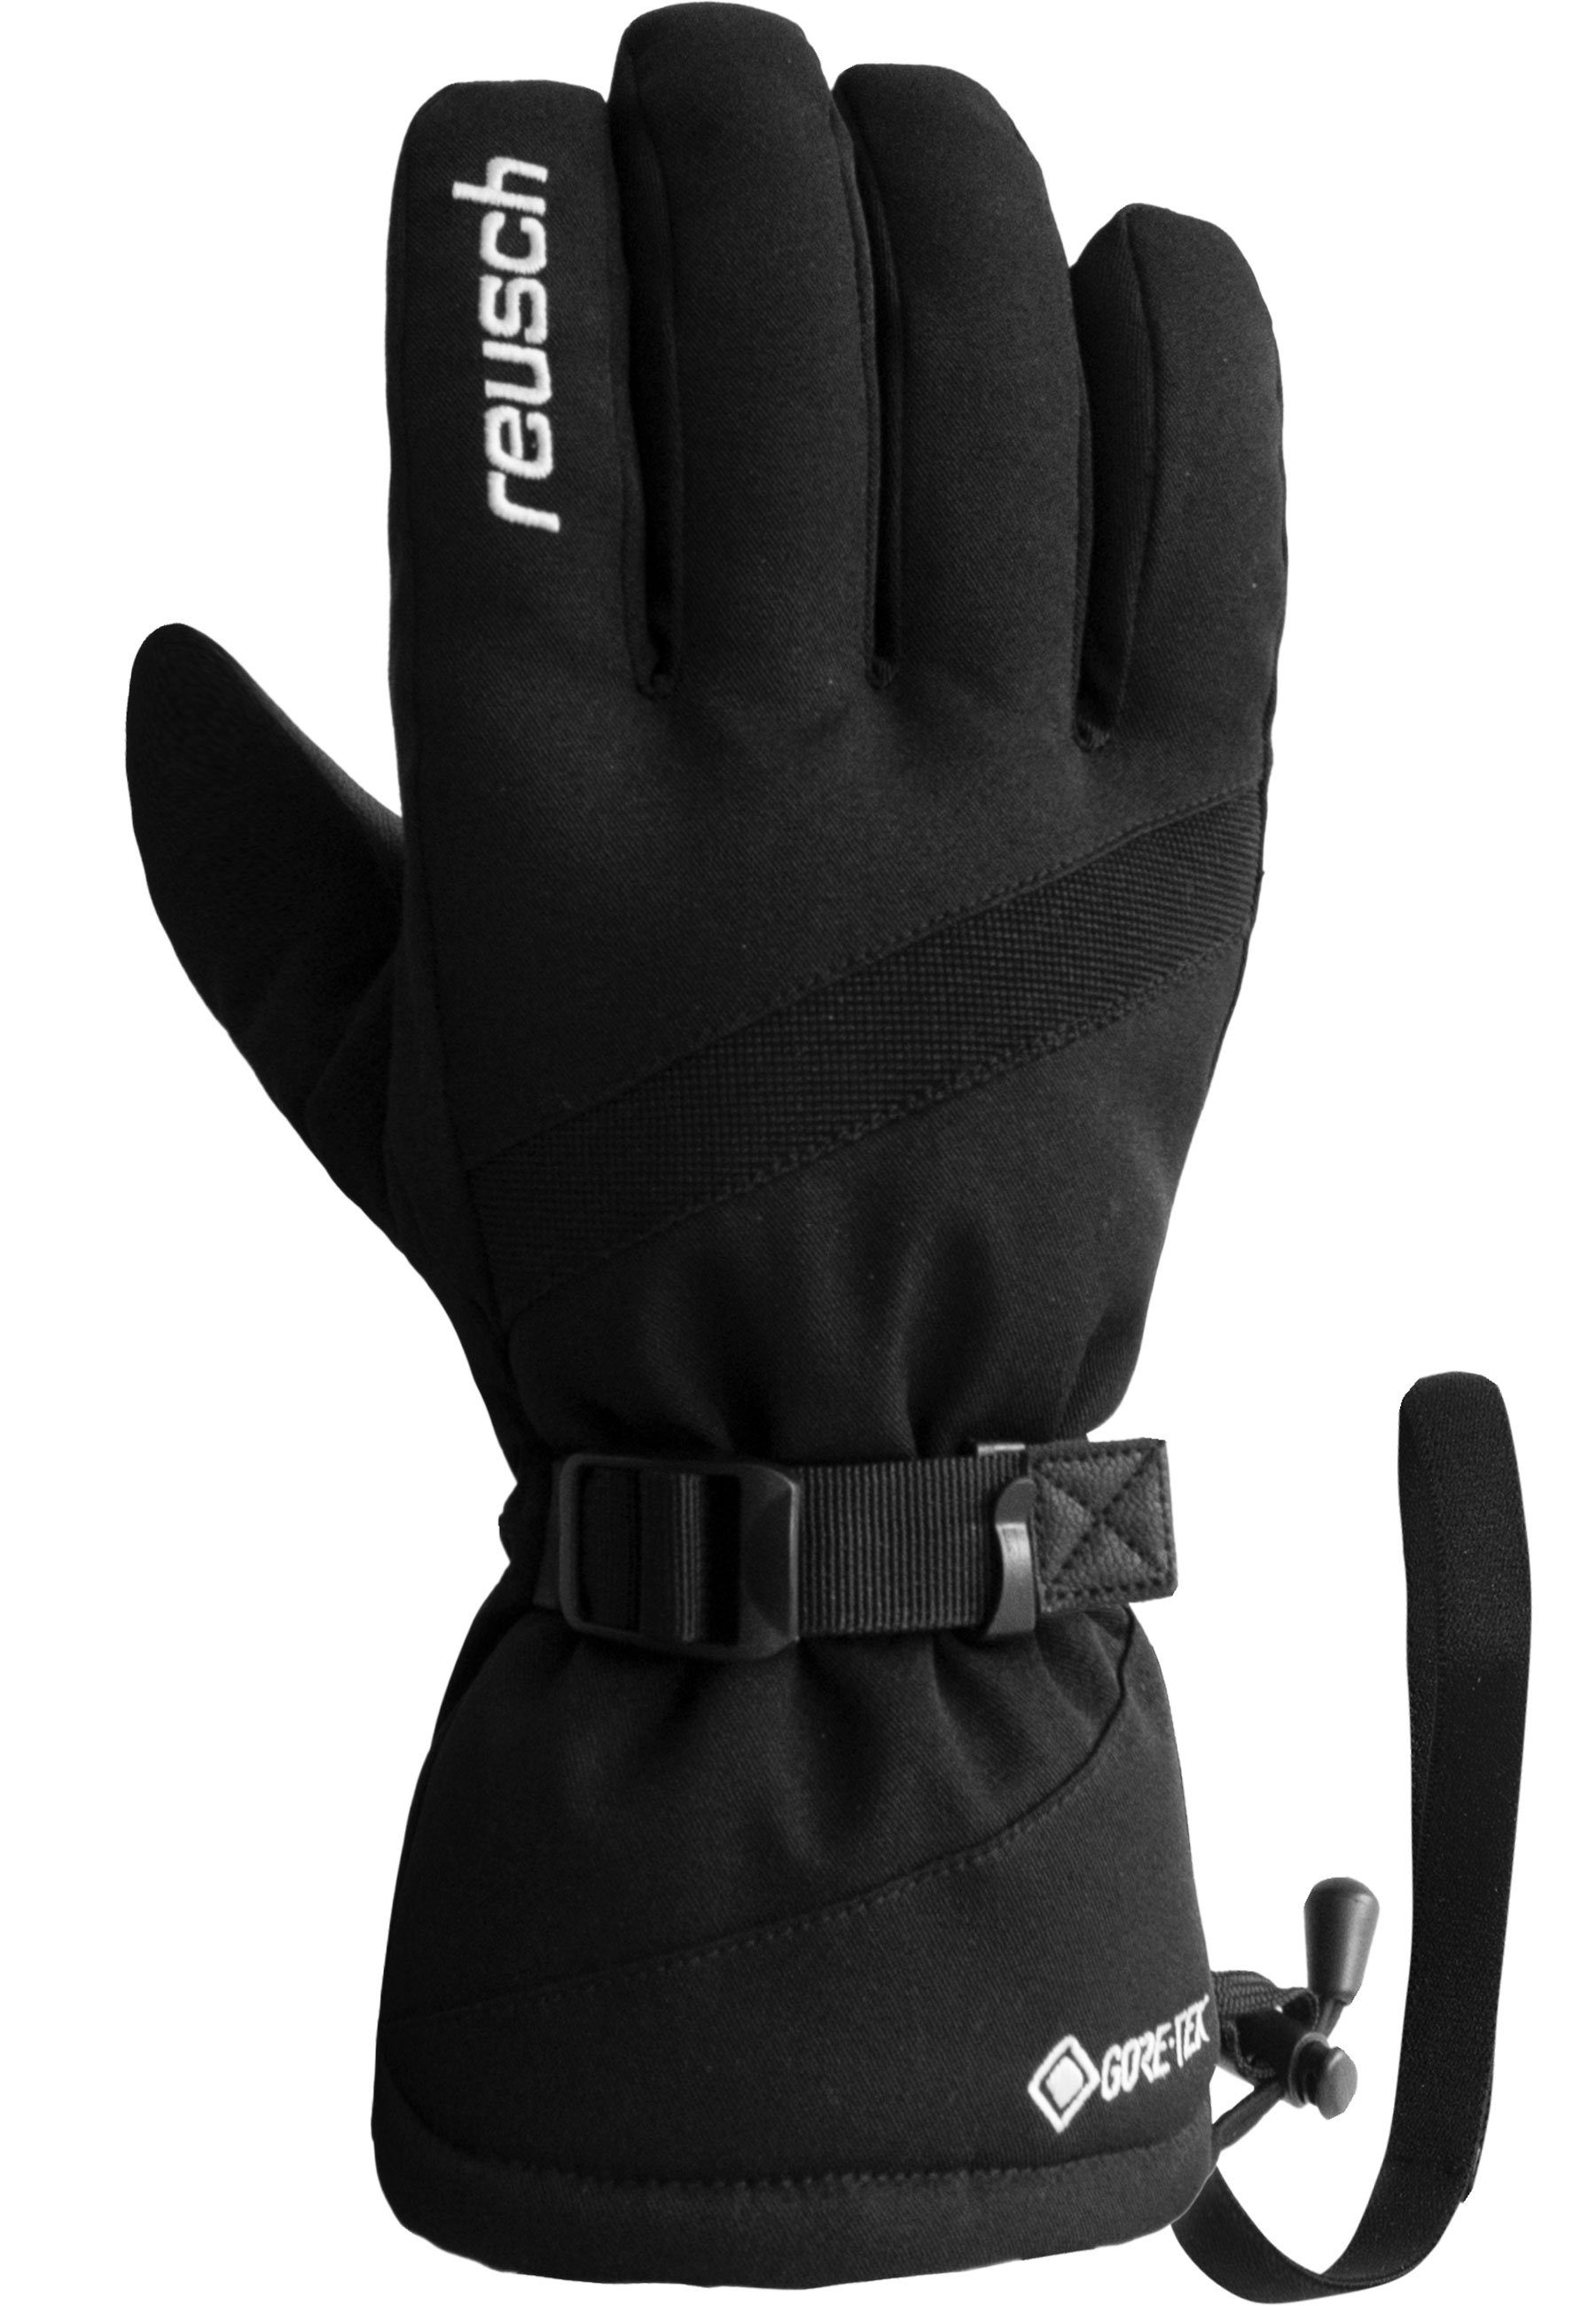 Reusch Skihandschuhe Warm Glove aus Material Winter und wasserdichtem GORE-TEX atmungsaktivem